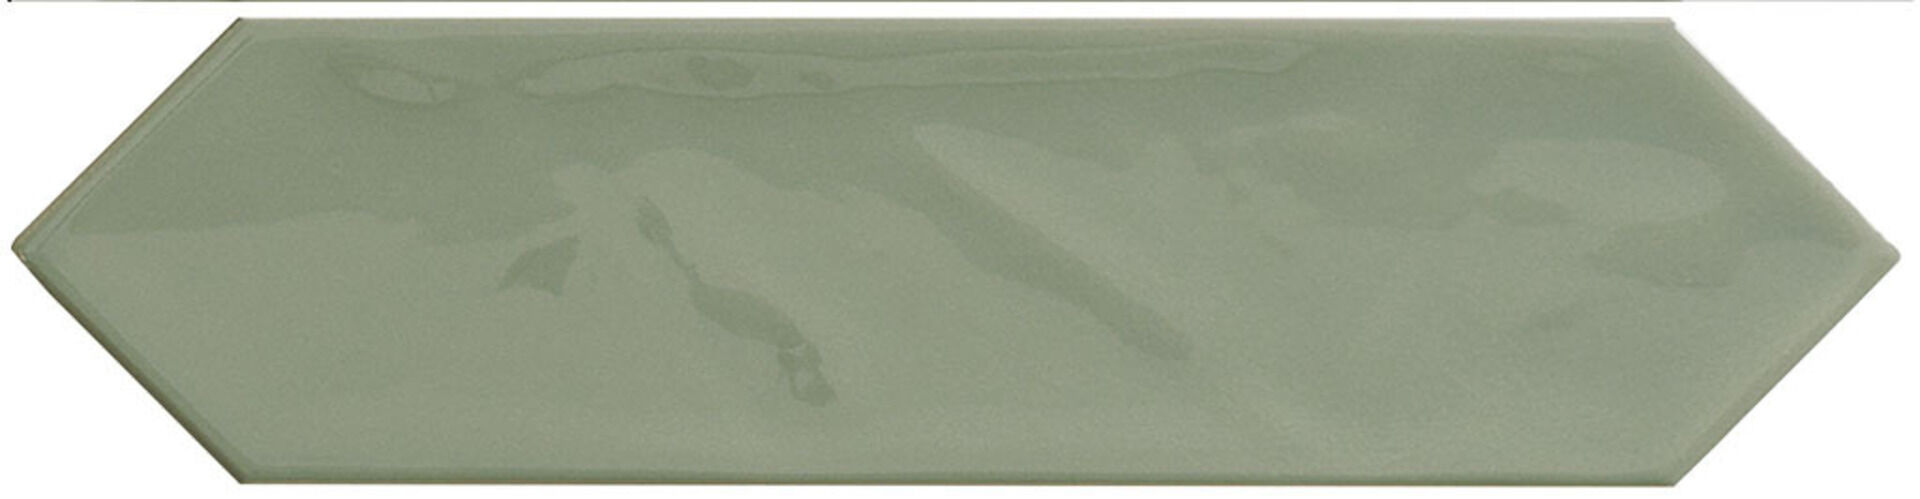 Керамическая плитка KANE PICKET SAGE 7,5*30 / коллекция KANE / производитель Cifre / страна Испания